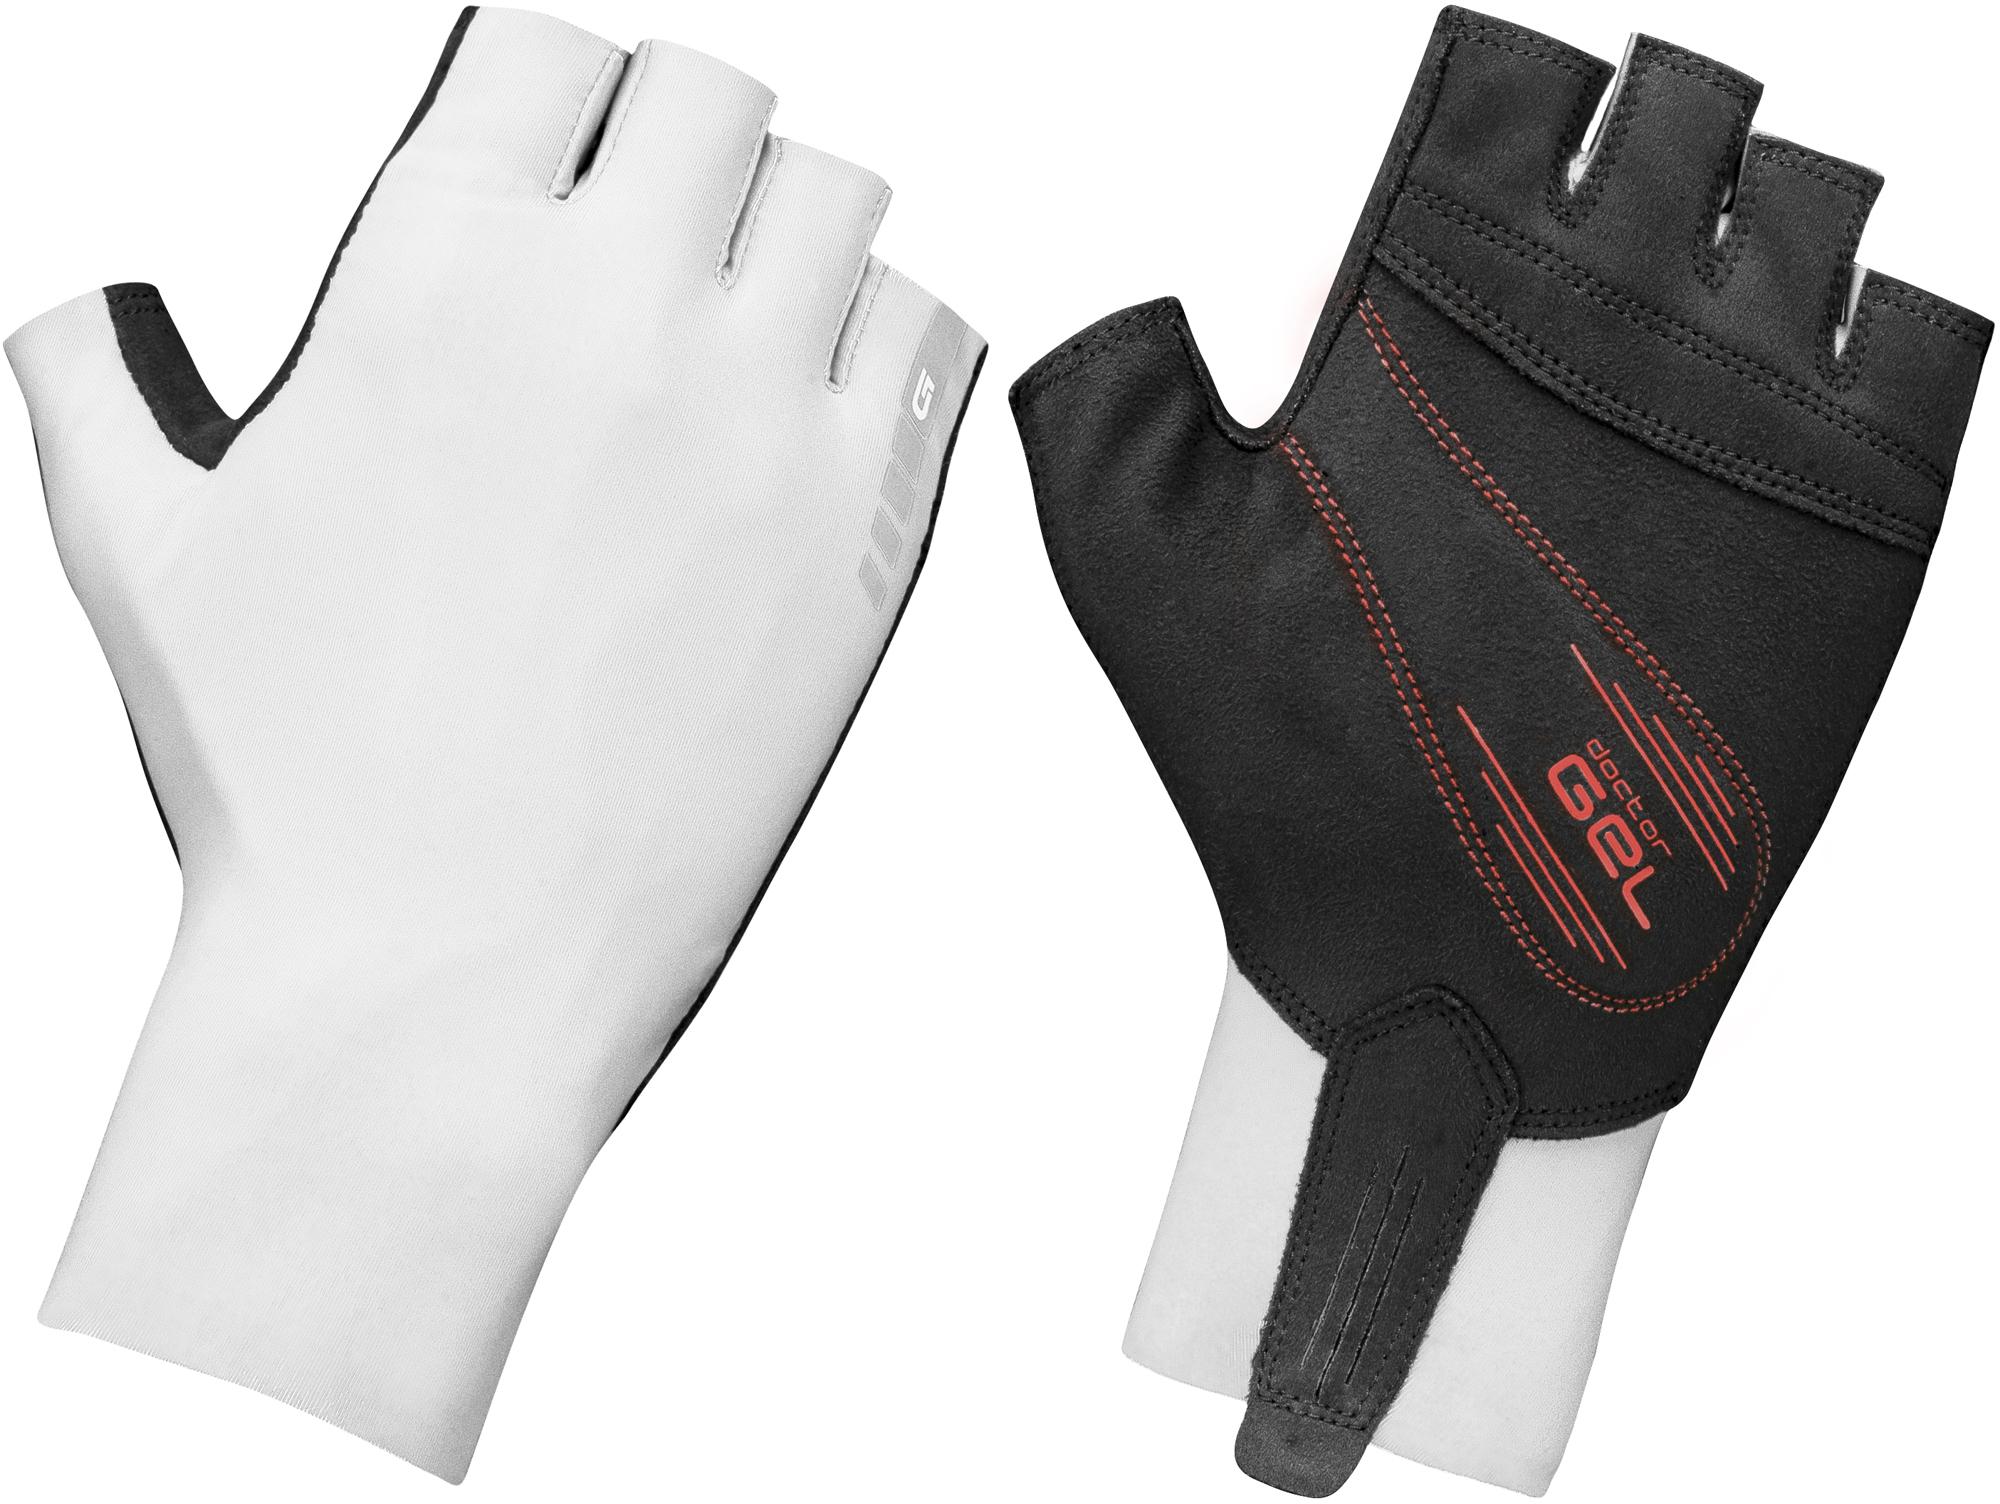 Gripgrab Aero Tt Raceday Gloves - White/white